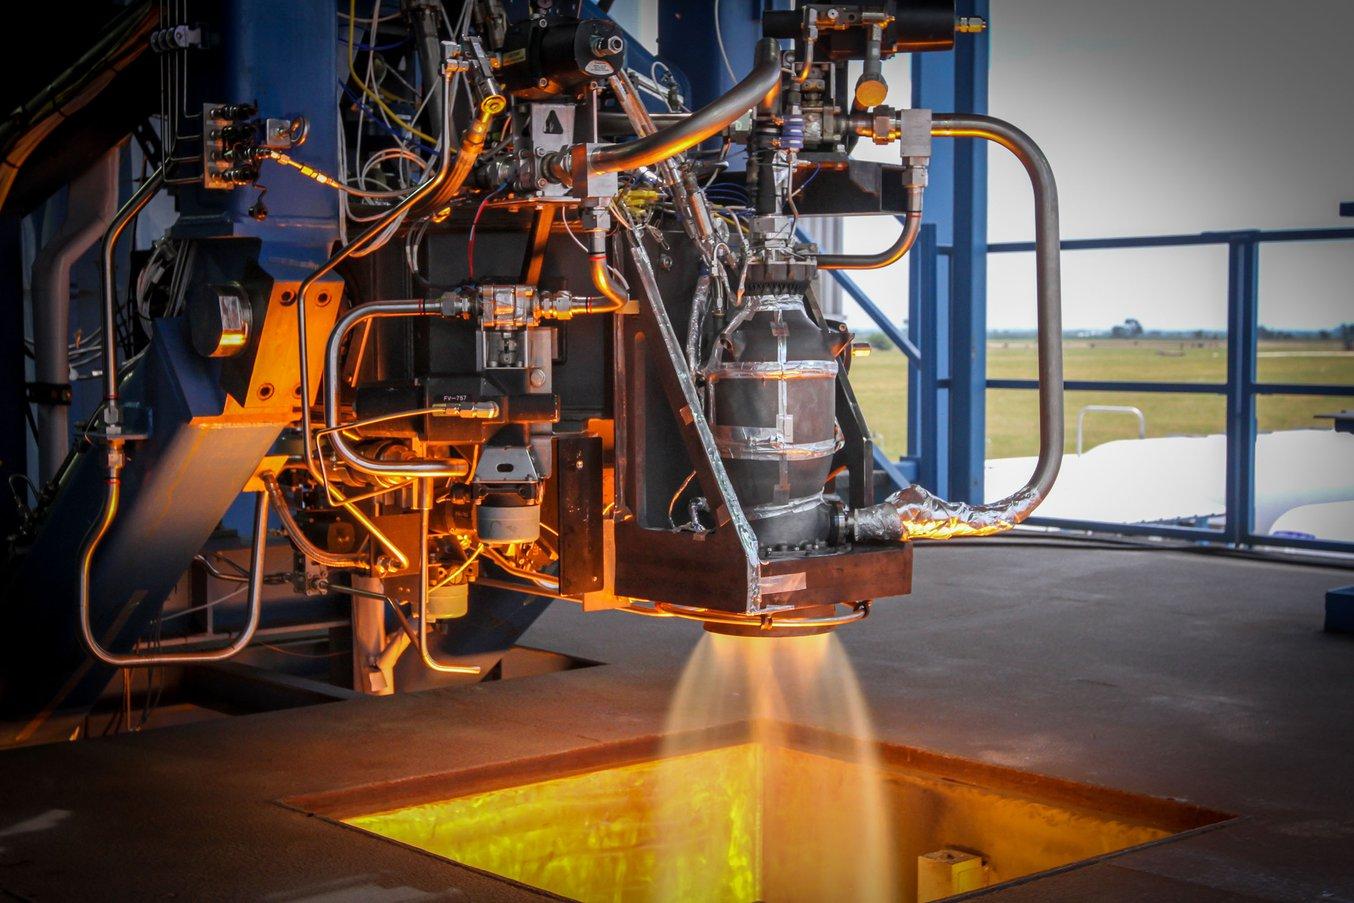 La capsula Crew Dragon di SpaceX, equipaggiata con motori SuperDraco stampati in 3D, ha preso il volo per la prima volta a marzo 2019. (Fonte: SpaceX)